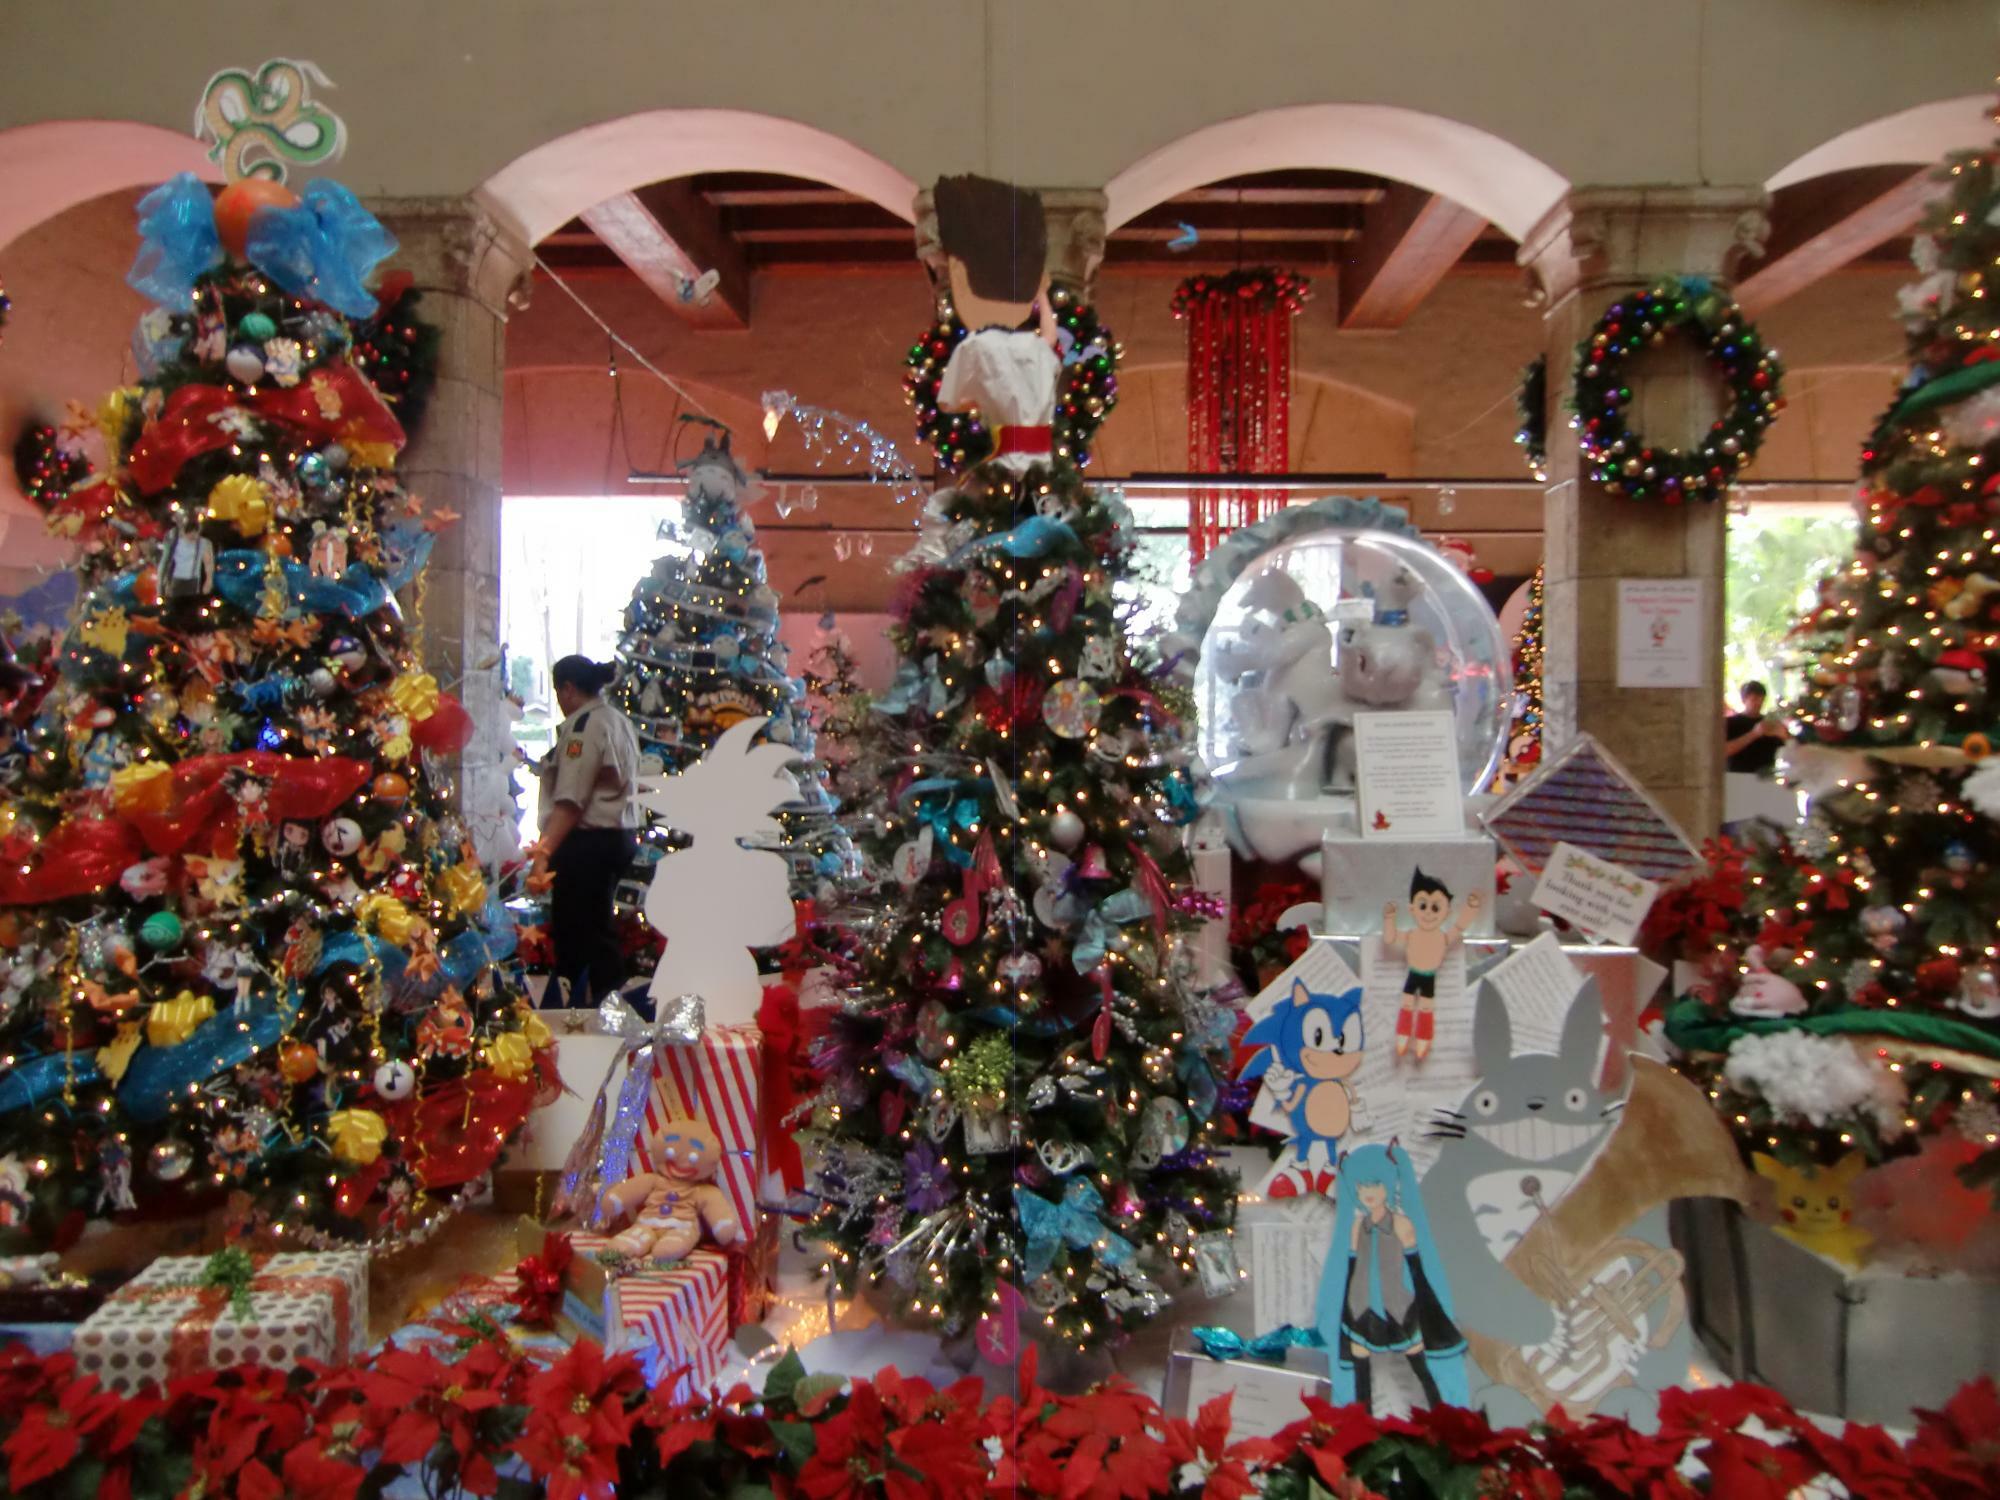 ホノルル・ハレ（ホノルル市庁舎）1階エントランスは、毎年ホリデーシーズンになると、子ども達が創作したたくさんのクリスマスツリーが飾られる。日本のキャラクターを多数飾ったツリーもある（2013年撮影）。